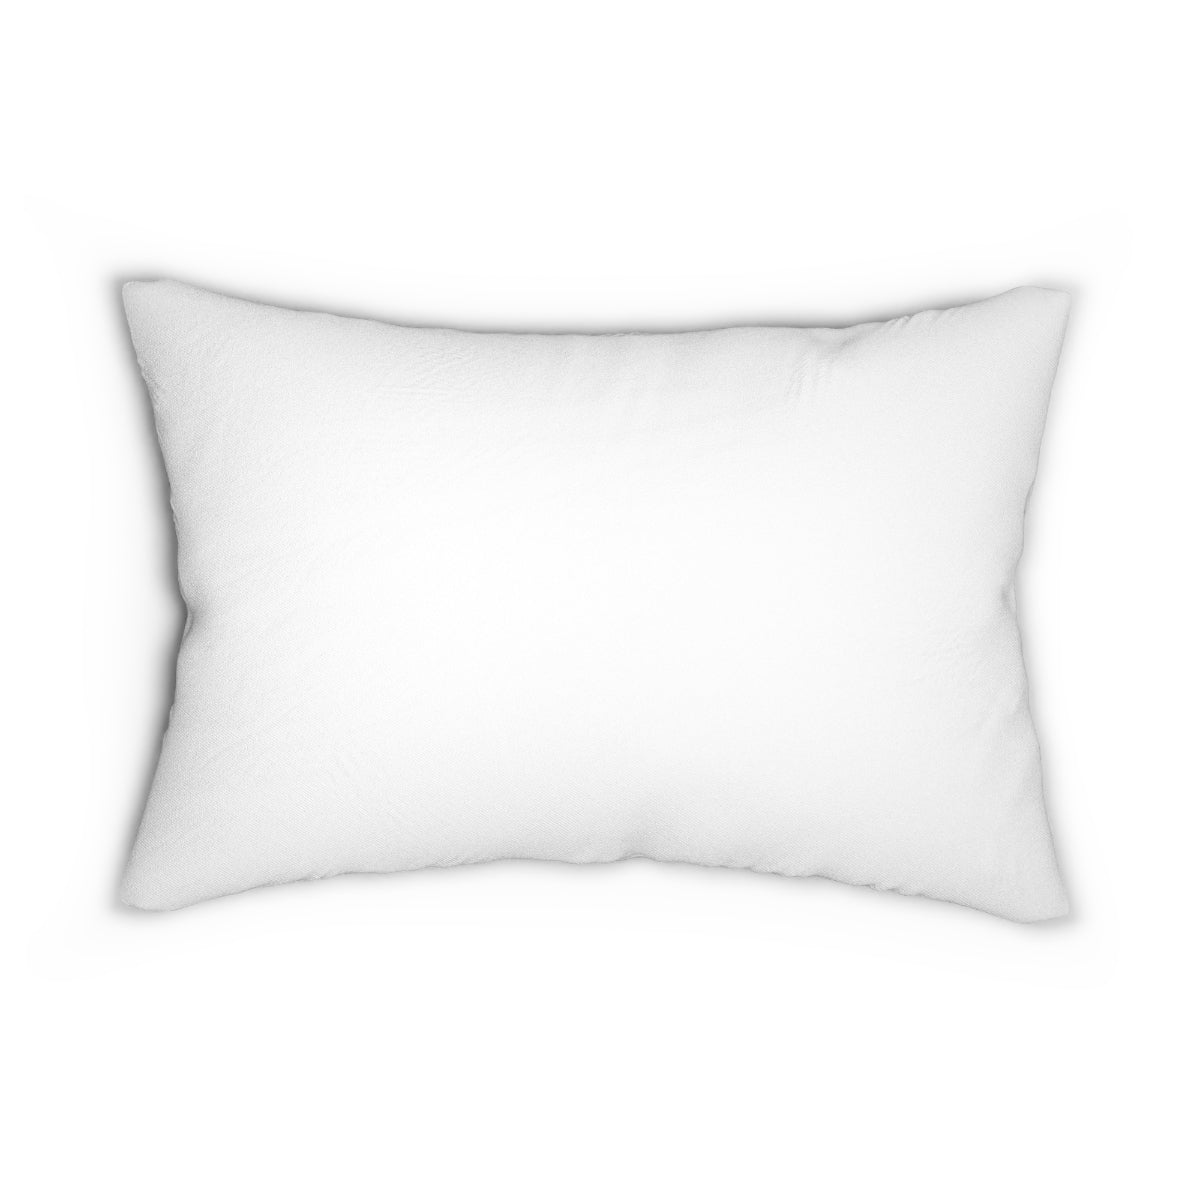 DG AR House Pillow